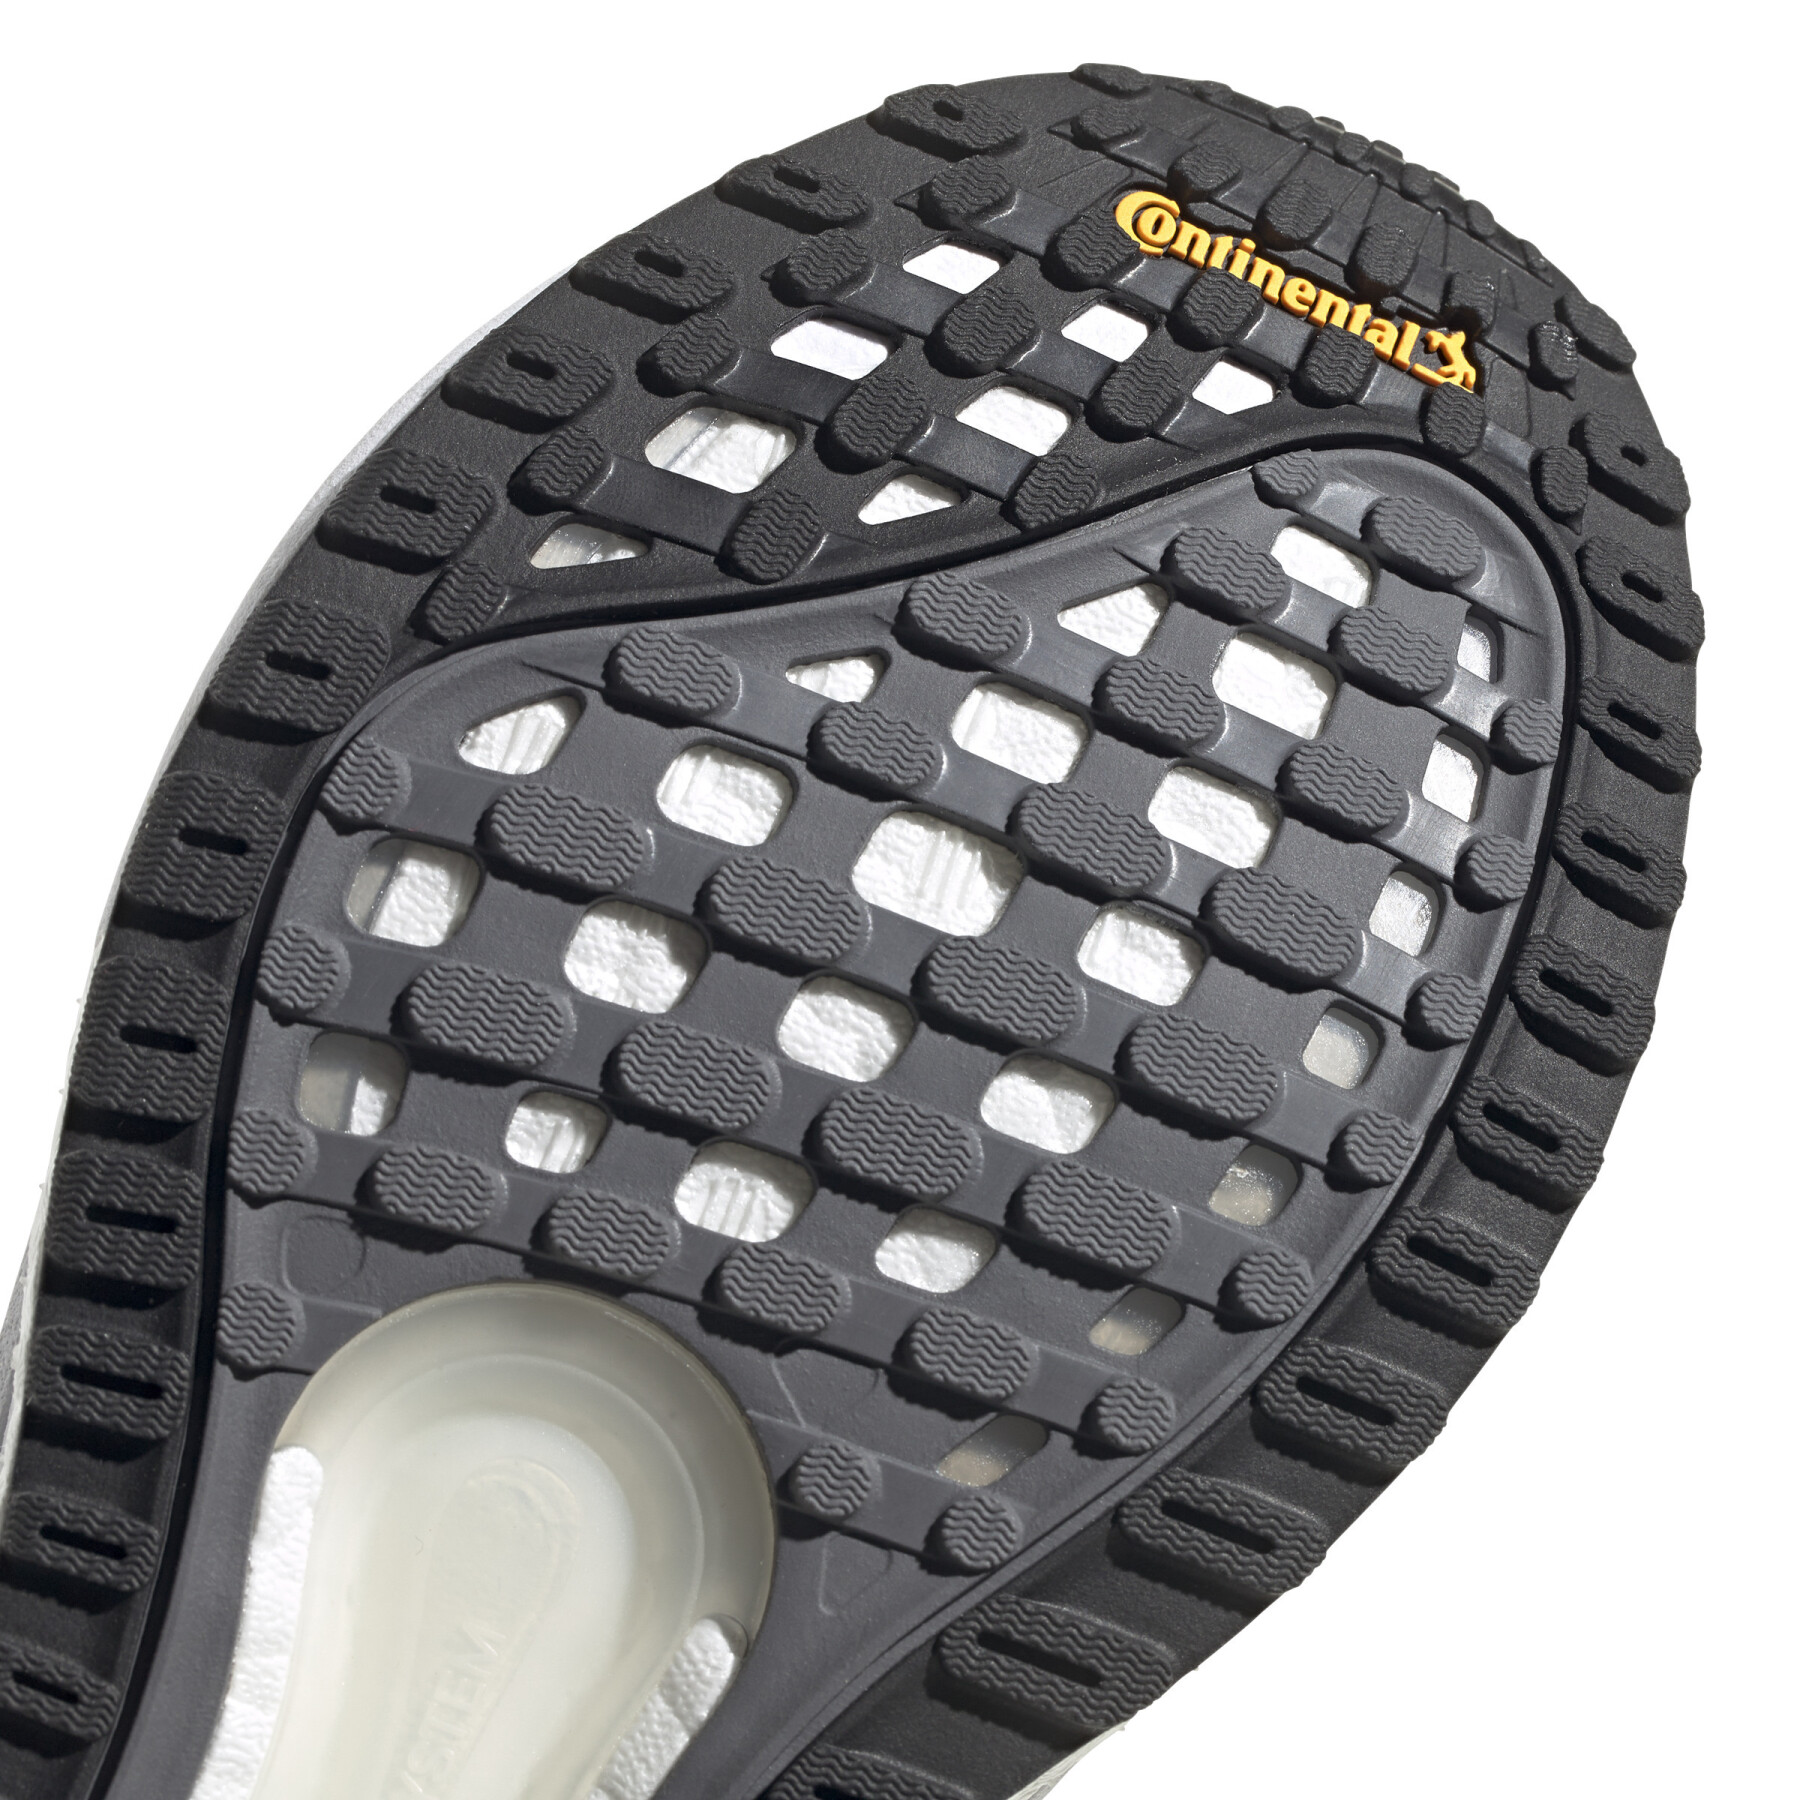 Chaussures de running femme adidas SolarGlide 3